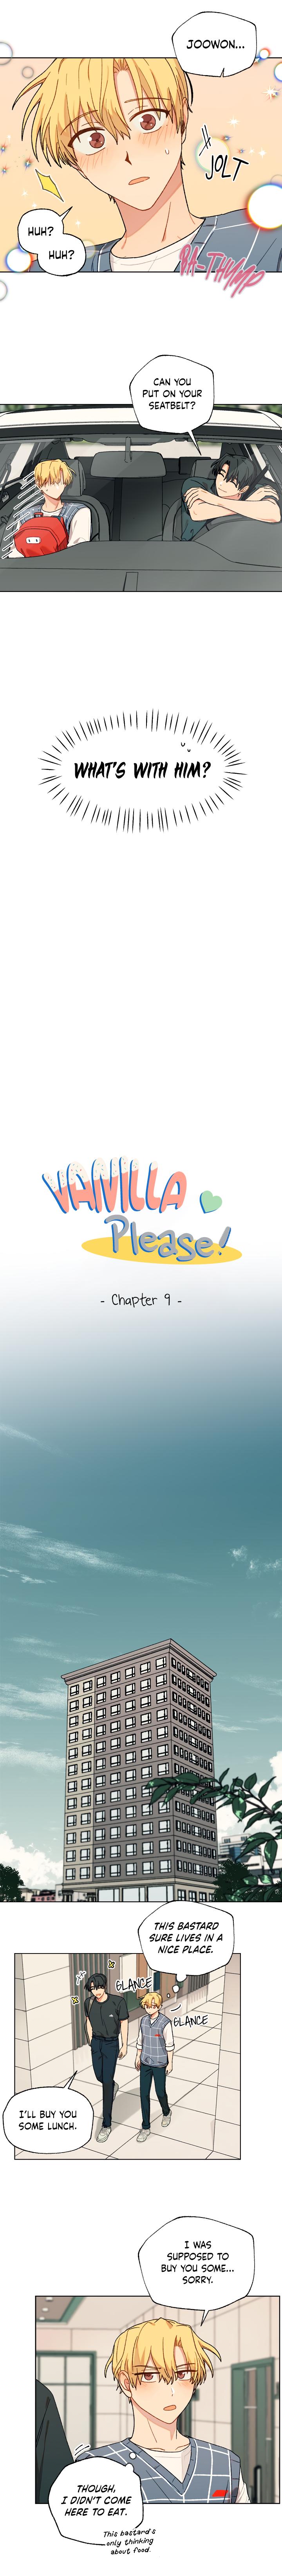 Vanilla, Please! - Page 3